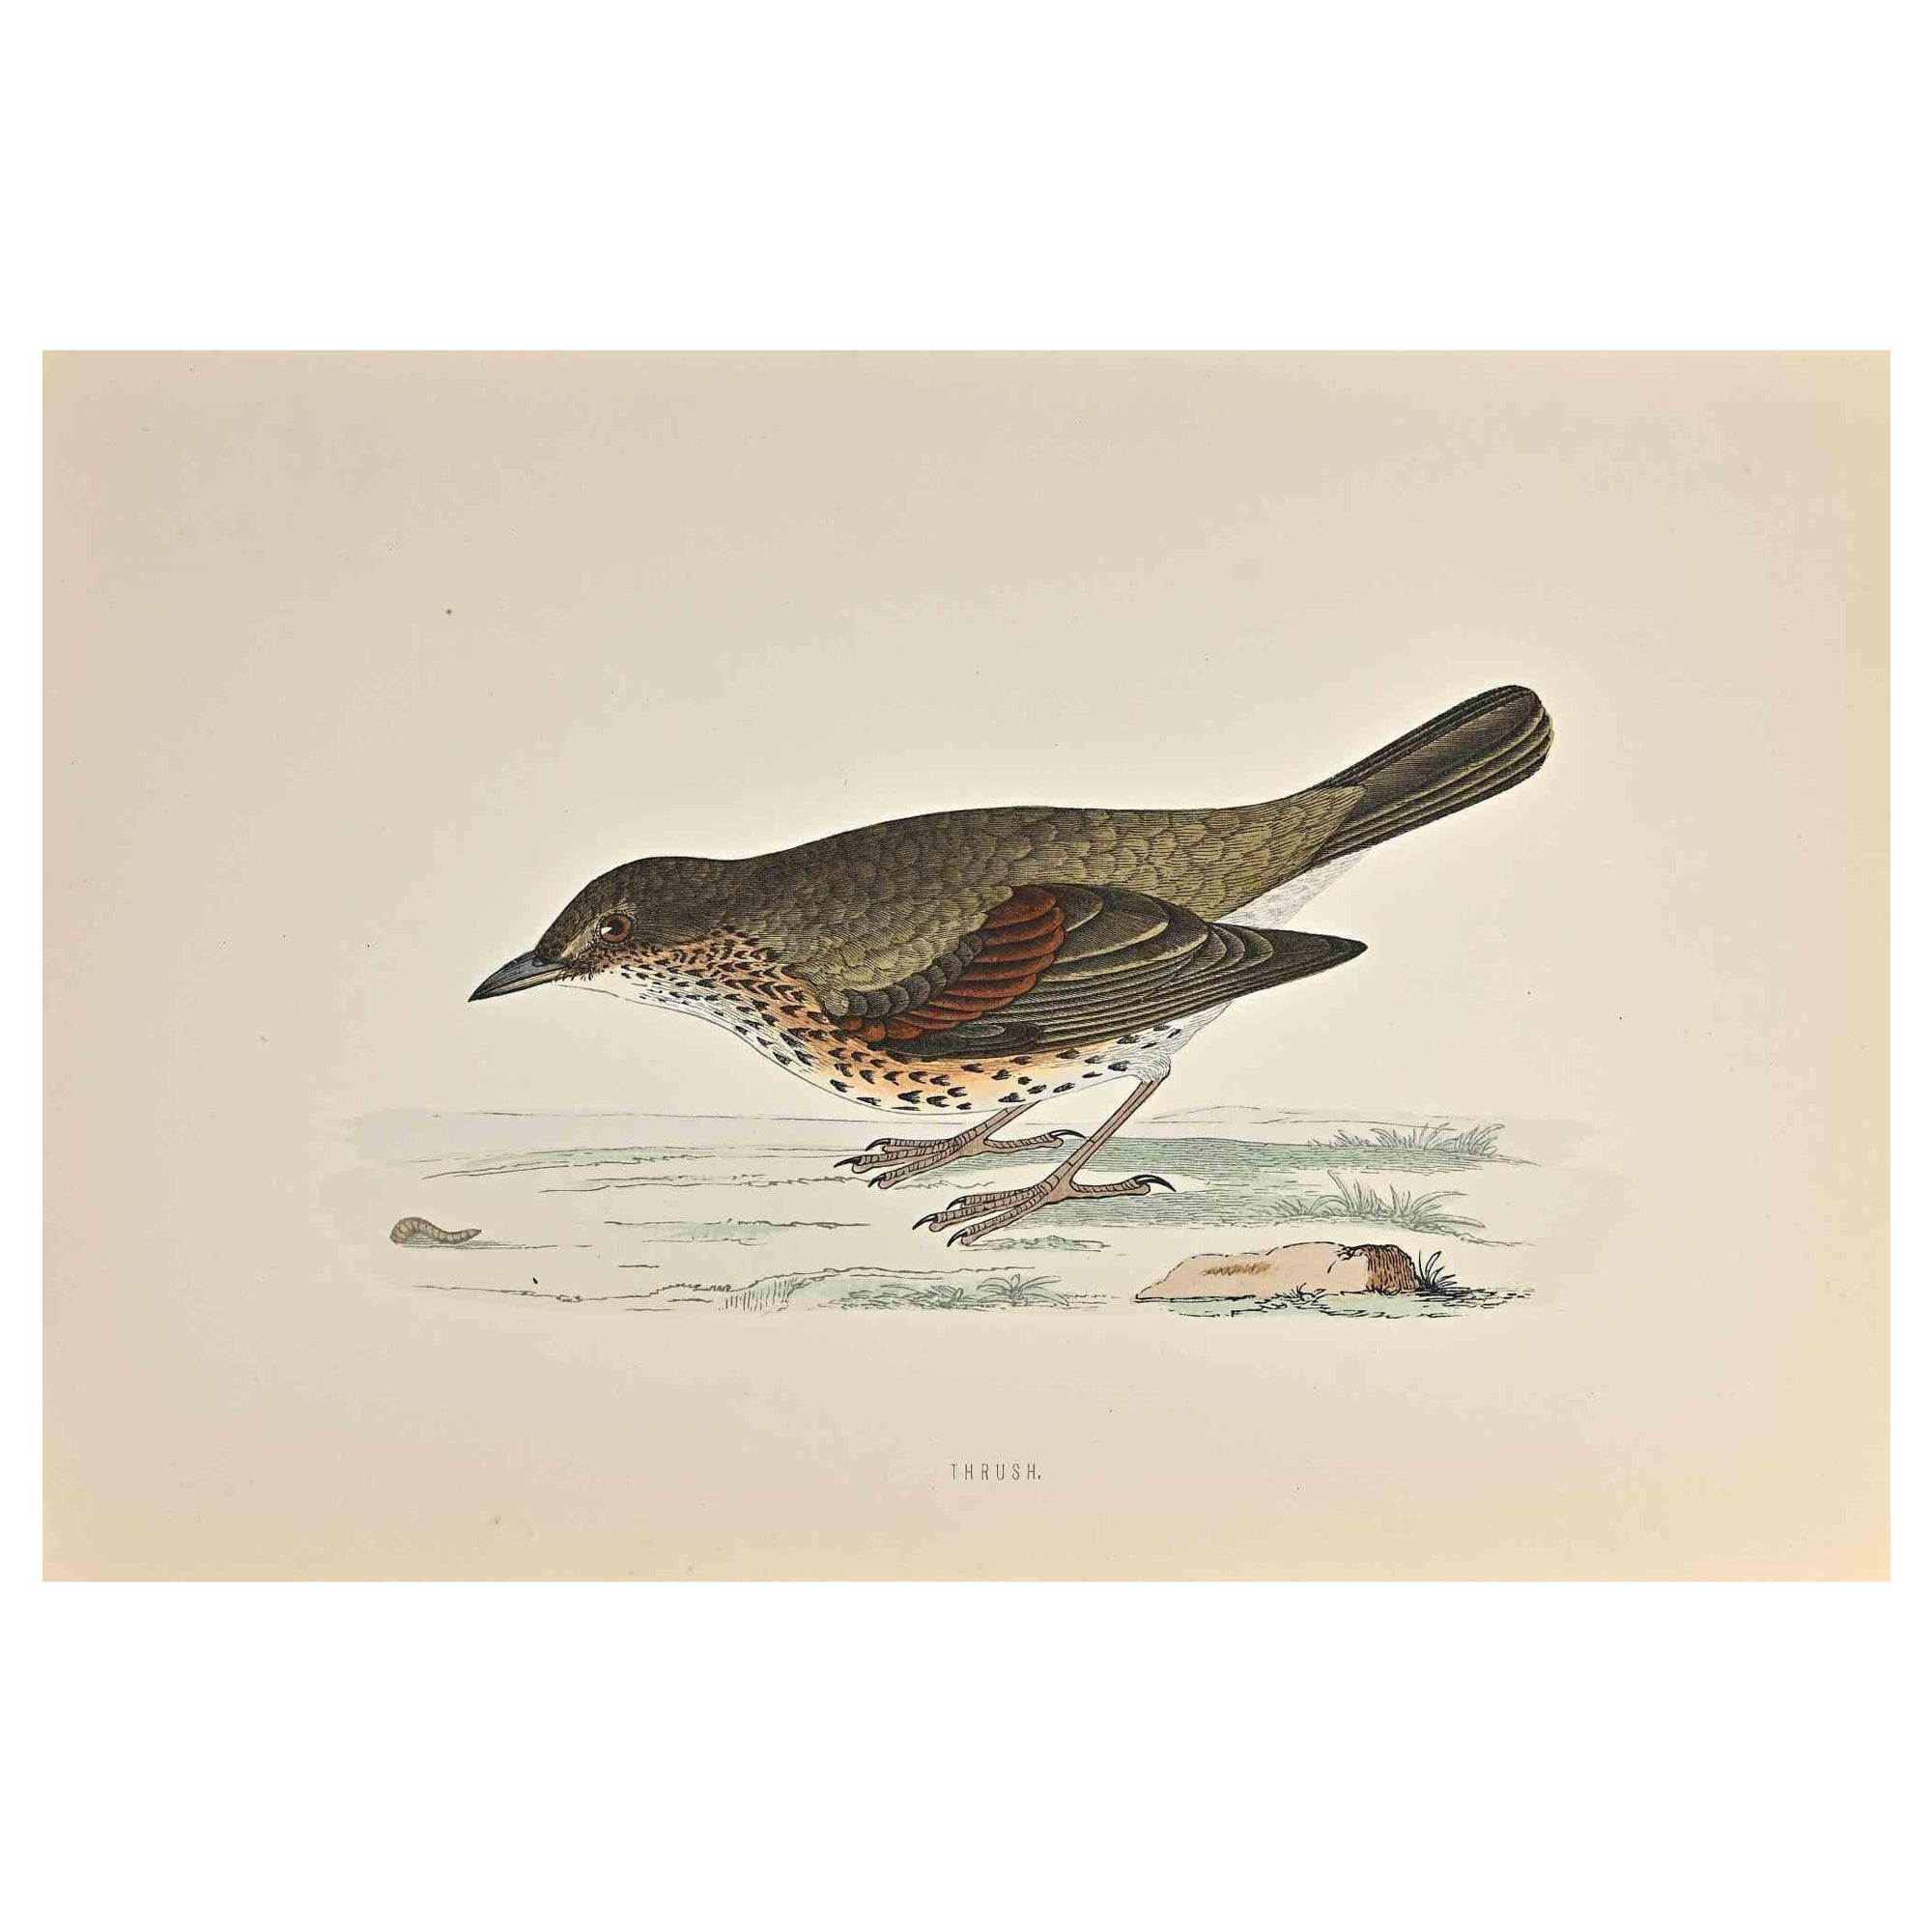 La grive est une œuvre d'art moderne réalisée en 1870 par l'artiste britannique Alexander Francis Lydon (1836-1917) . 

Gravure sur bois, colorée à la main, publiée par London, Bell & Sons, 1870.  Nom de l'oiseau imprimé dans la plaque. Cette œuvre